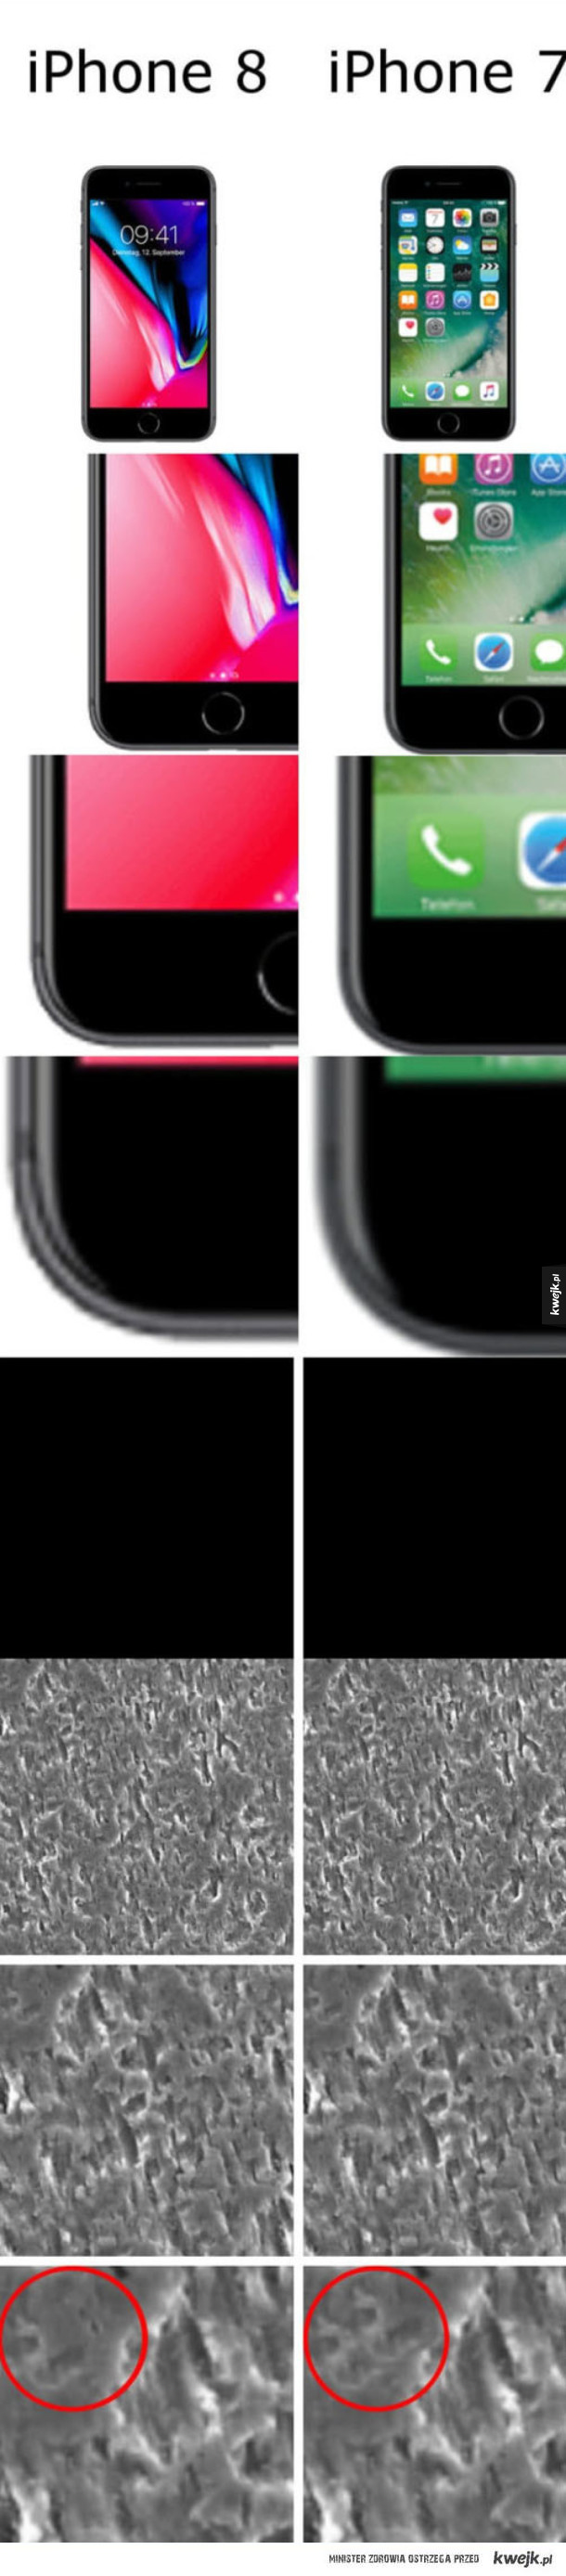 Oto różnice między iPhone 7 a 8